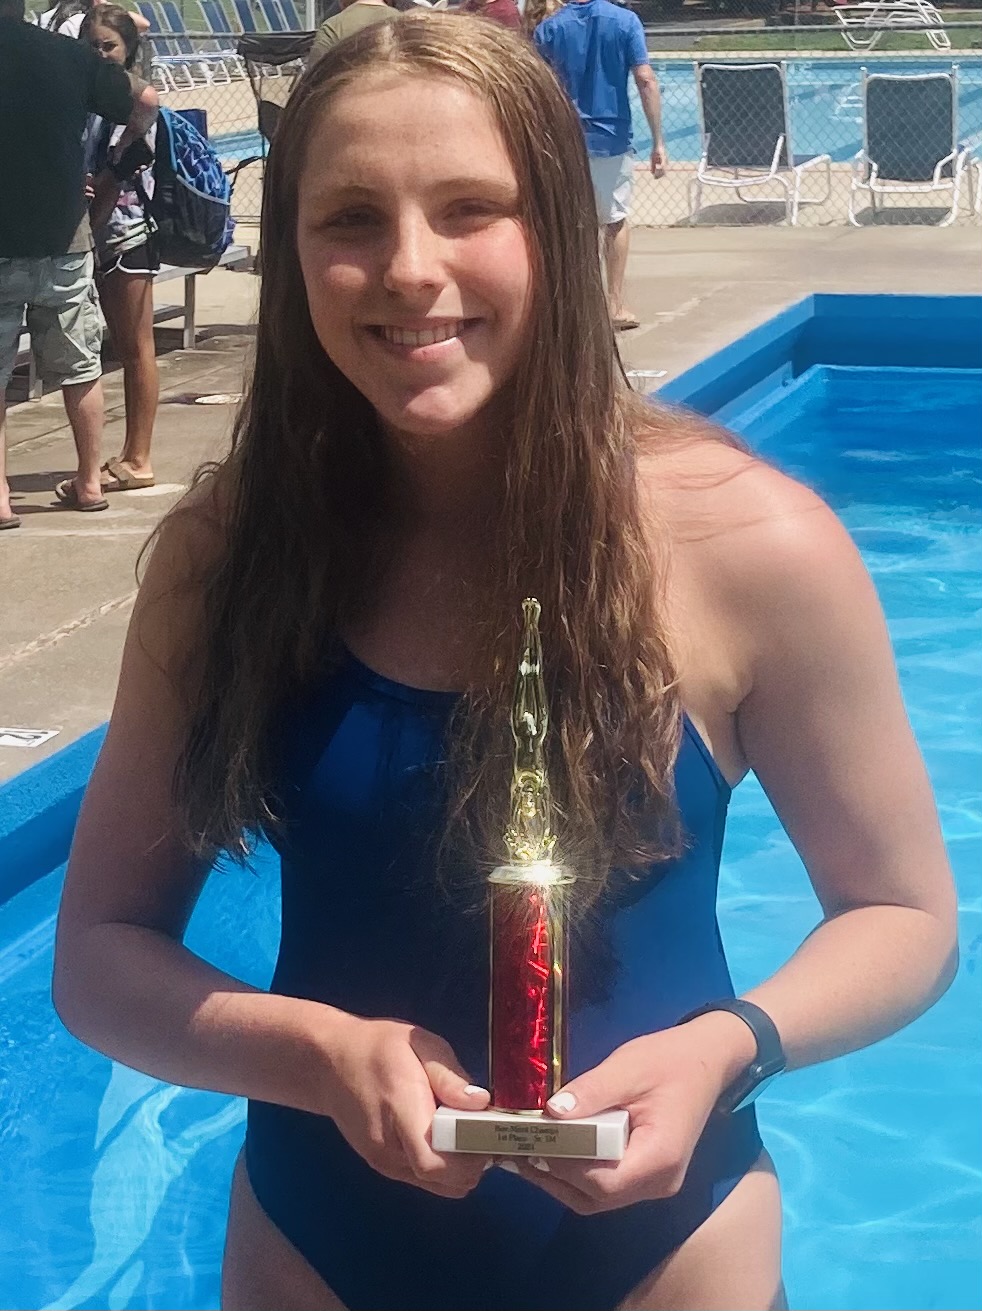 North Penn's Allison captures Bux-Mont Senior Girls Diving Title